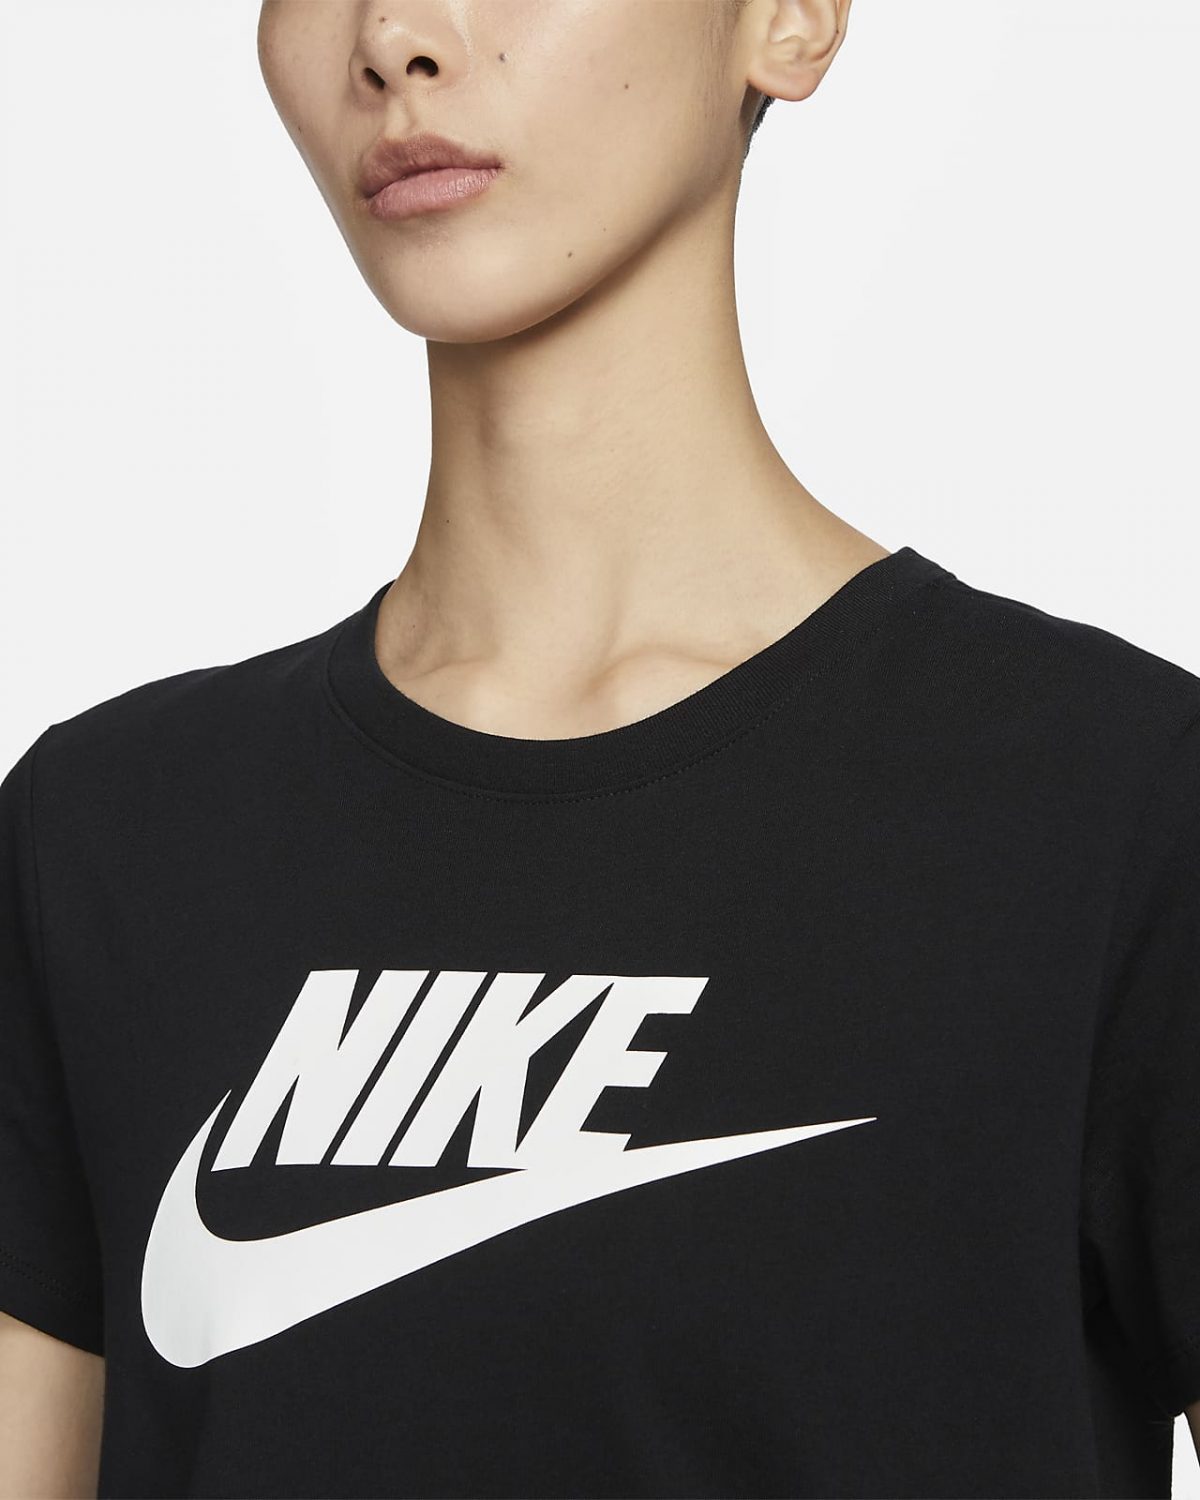 Женская футболка Nike Sportswear Essentials